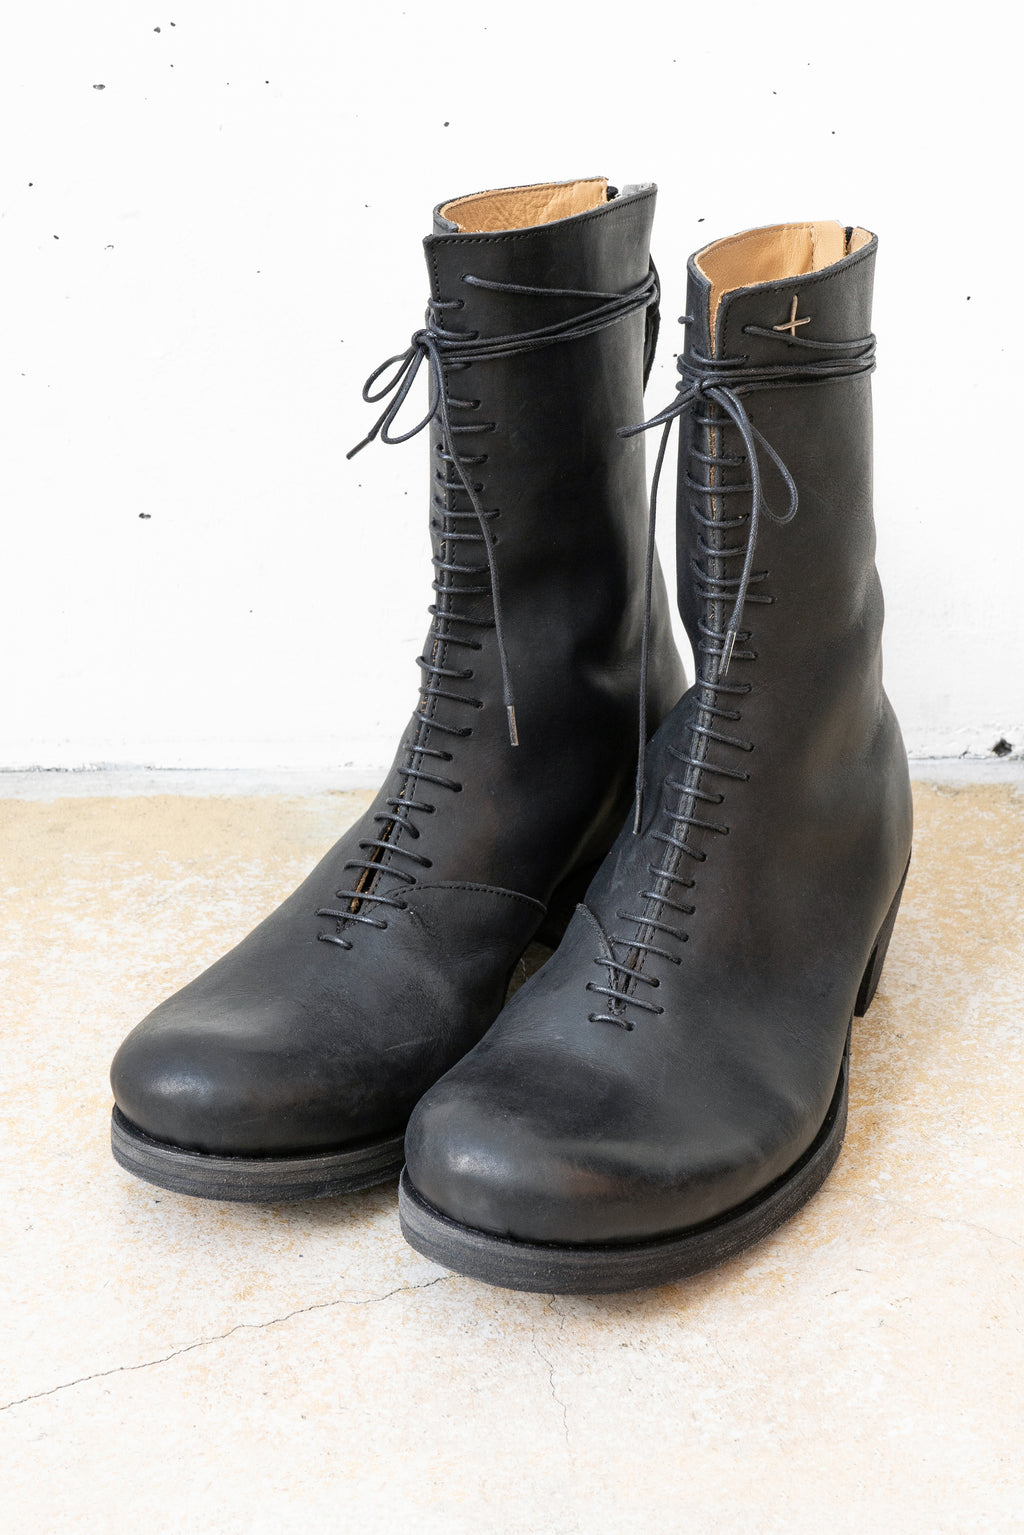 m.a+/Shoes SW6B3Z/VA 1,5 wo. tall back zipper boot w/laces – boutiqueW